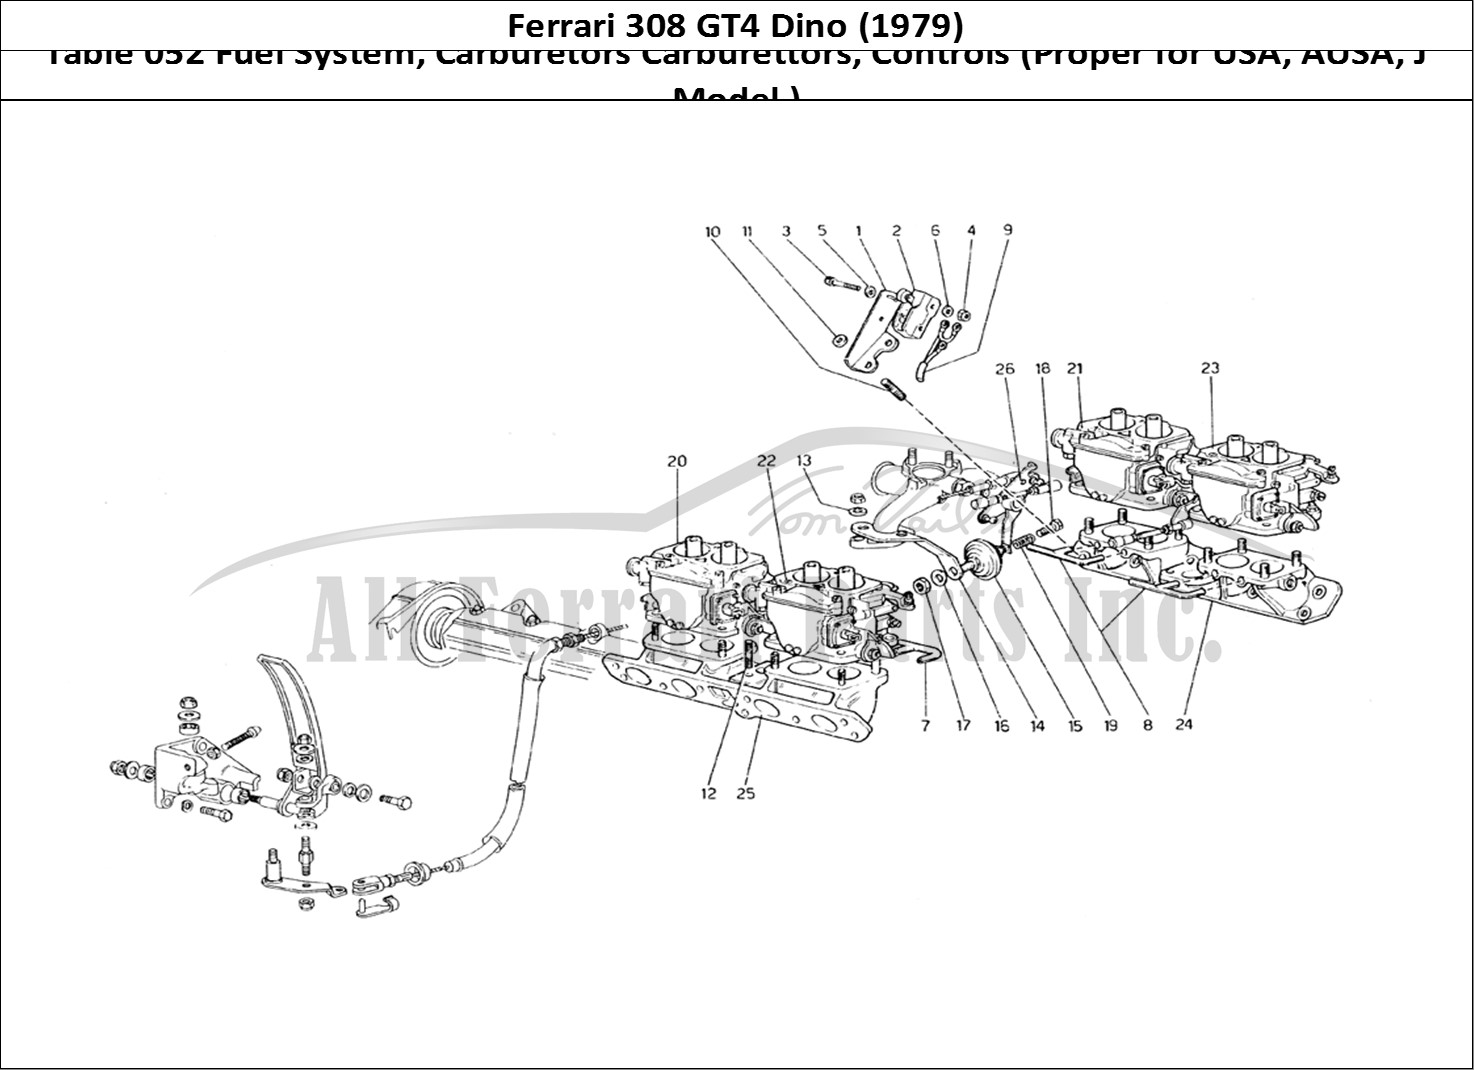 Ferrari Parts Ferrari 308 GT4 Dino (1979) Page 052 Fuel System - Carburettor